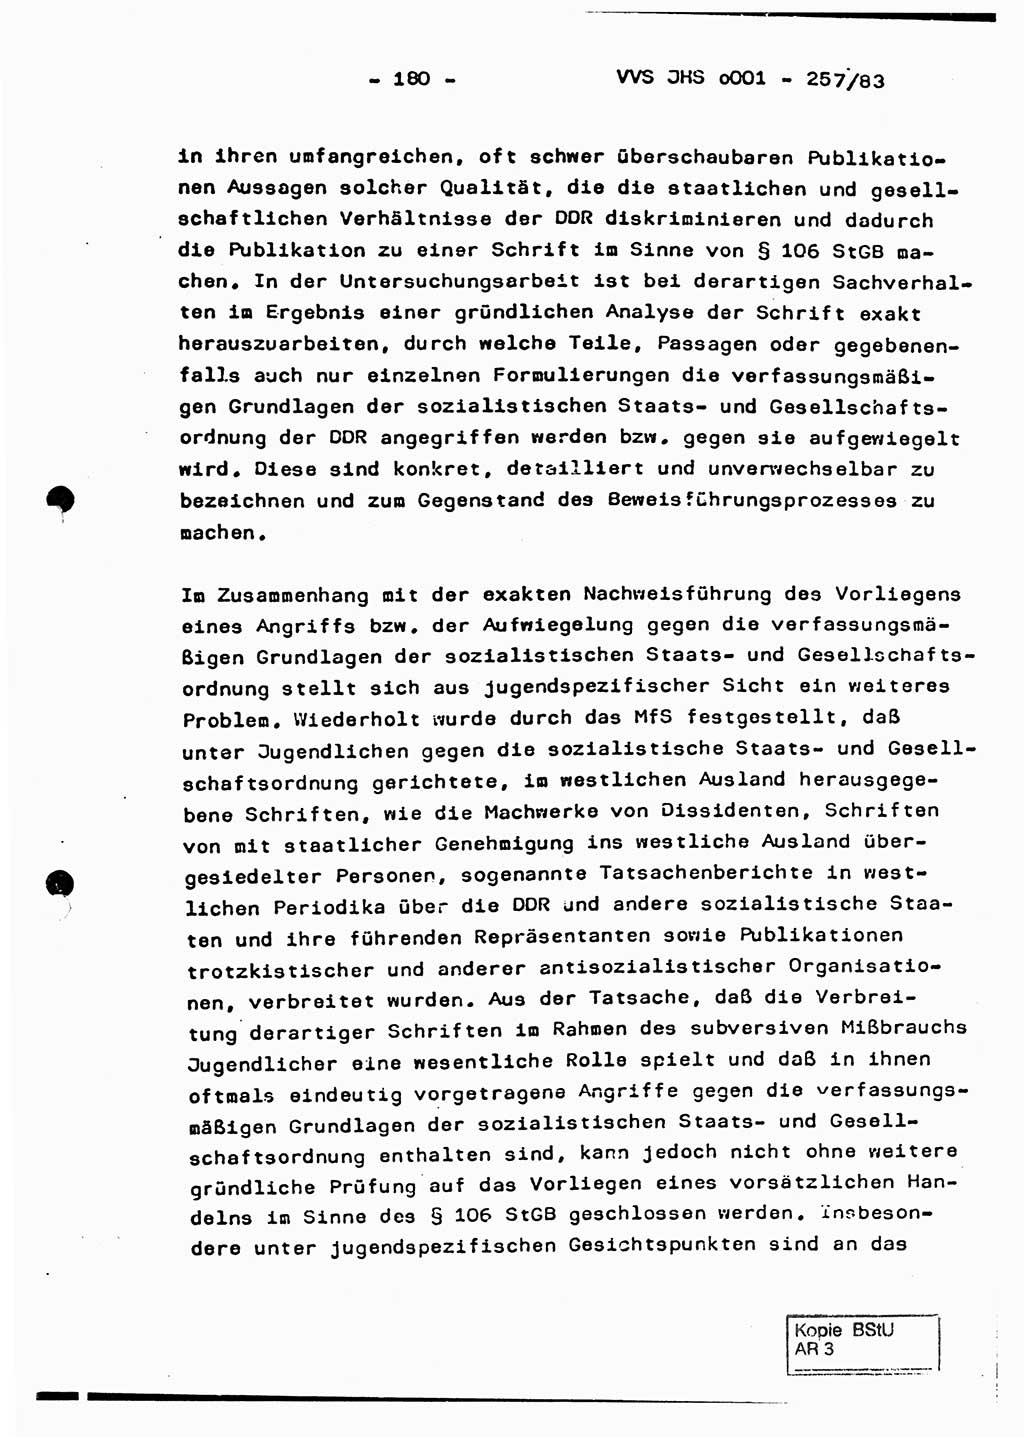 Dissertation, Oberst Helmut Lubas (BV Mdg.), Oberstleutnant Manfred Eschberger (HA IX), Oberleutnant Hans-Jürgen Ludwig (JHS), Ministerium für Staatssicherheit (MfS) [Deutsche Demokratische Republik (DDR)], Juristische Hochschule (JHS), Vertrauliche Verschlußsache (VVS) o001-257/83, Potsdam 1983, Seite 180 (Diss. MfS DDR JHS VVS o001-257/83 1983, S. 180)